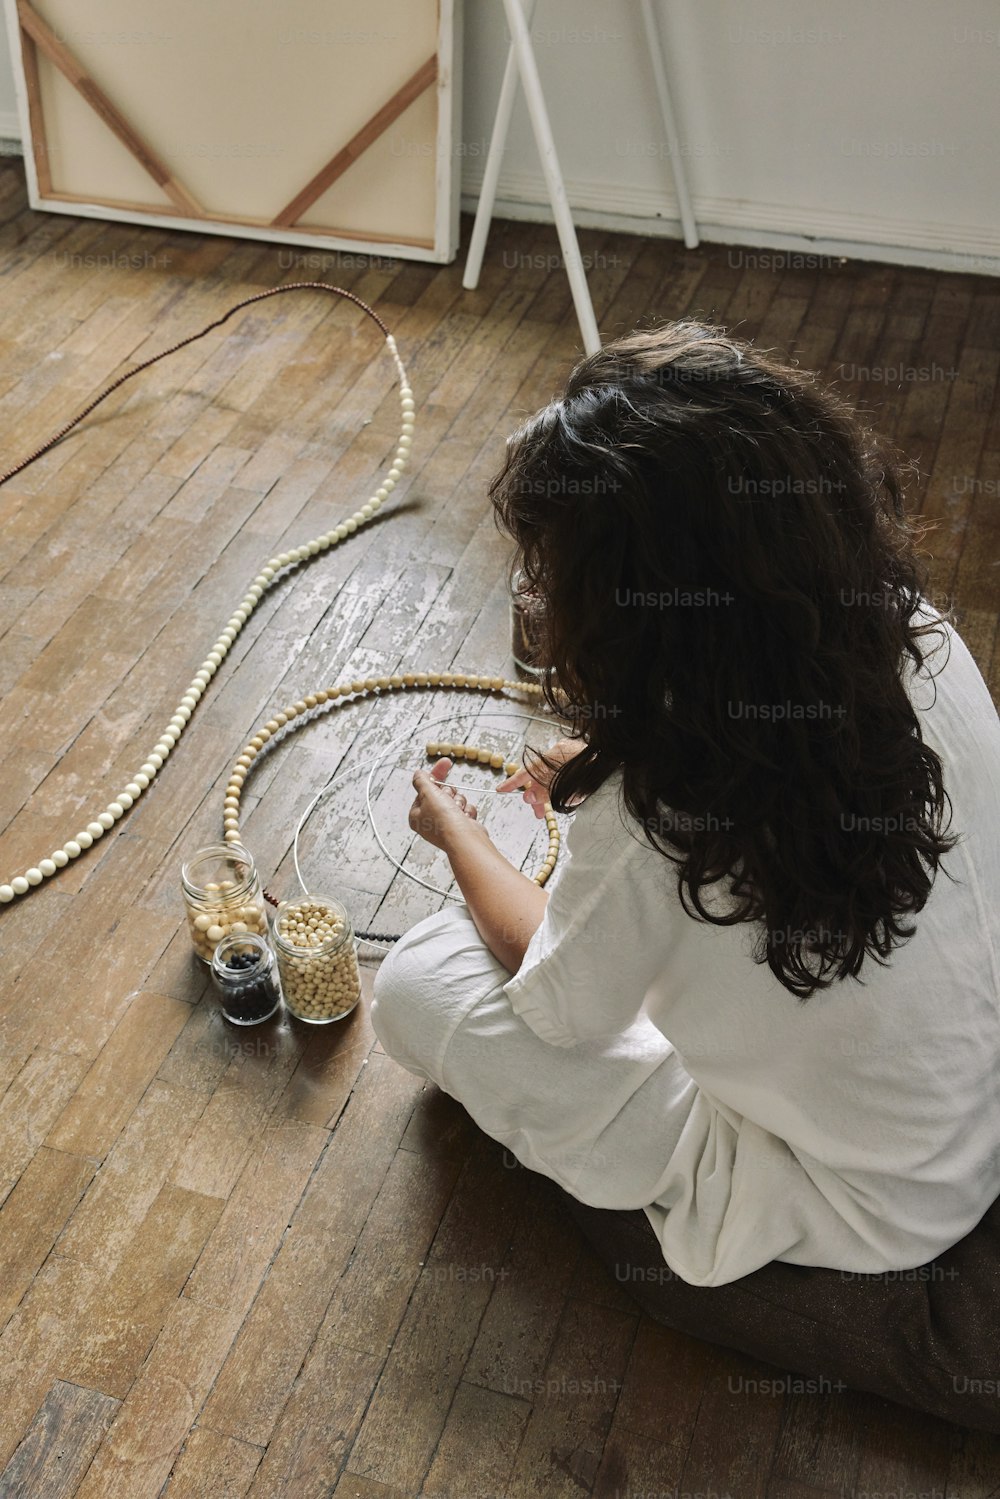 Una mujer sentada en el suelo junto a una serpiente